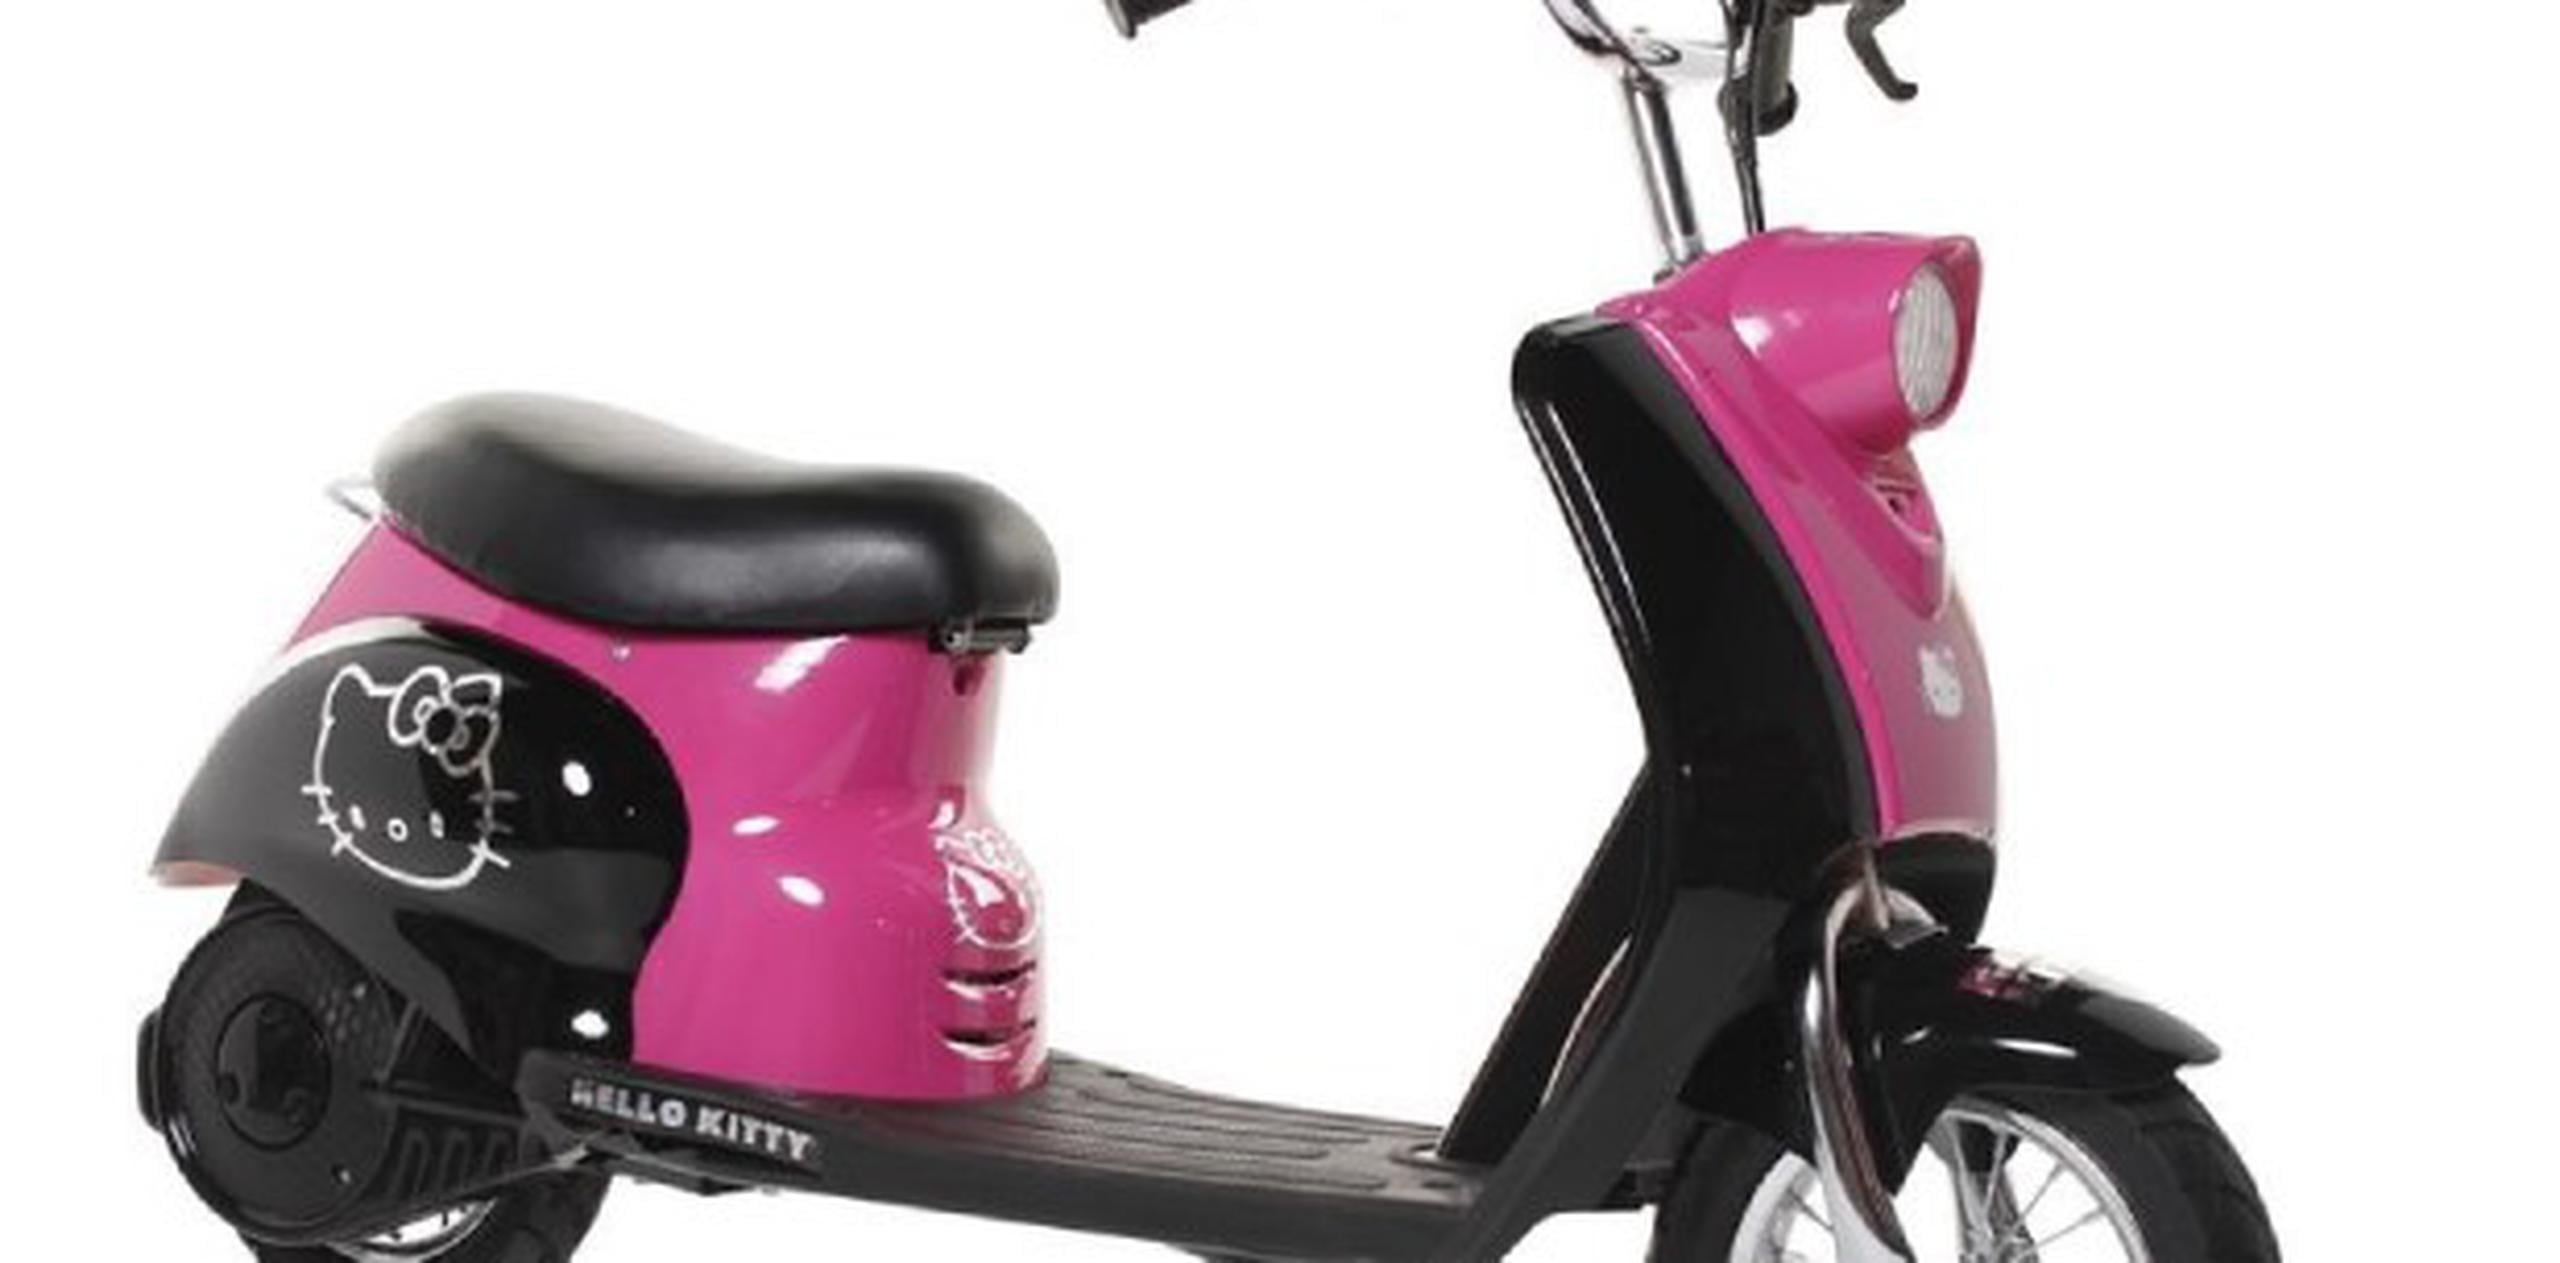 Los consumidores deben llevar la Hello Kitty City Motor Scooters a la tienda Toys R Us más cercana para que le devuelvan el dinero o le den un crédito en la tienda. (Suministrada)